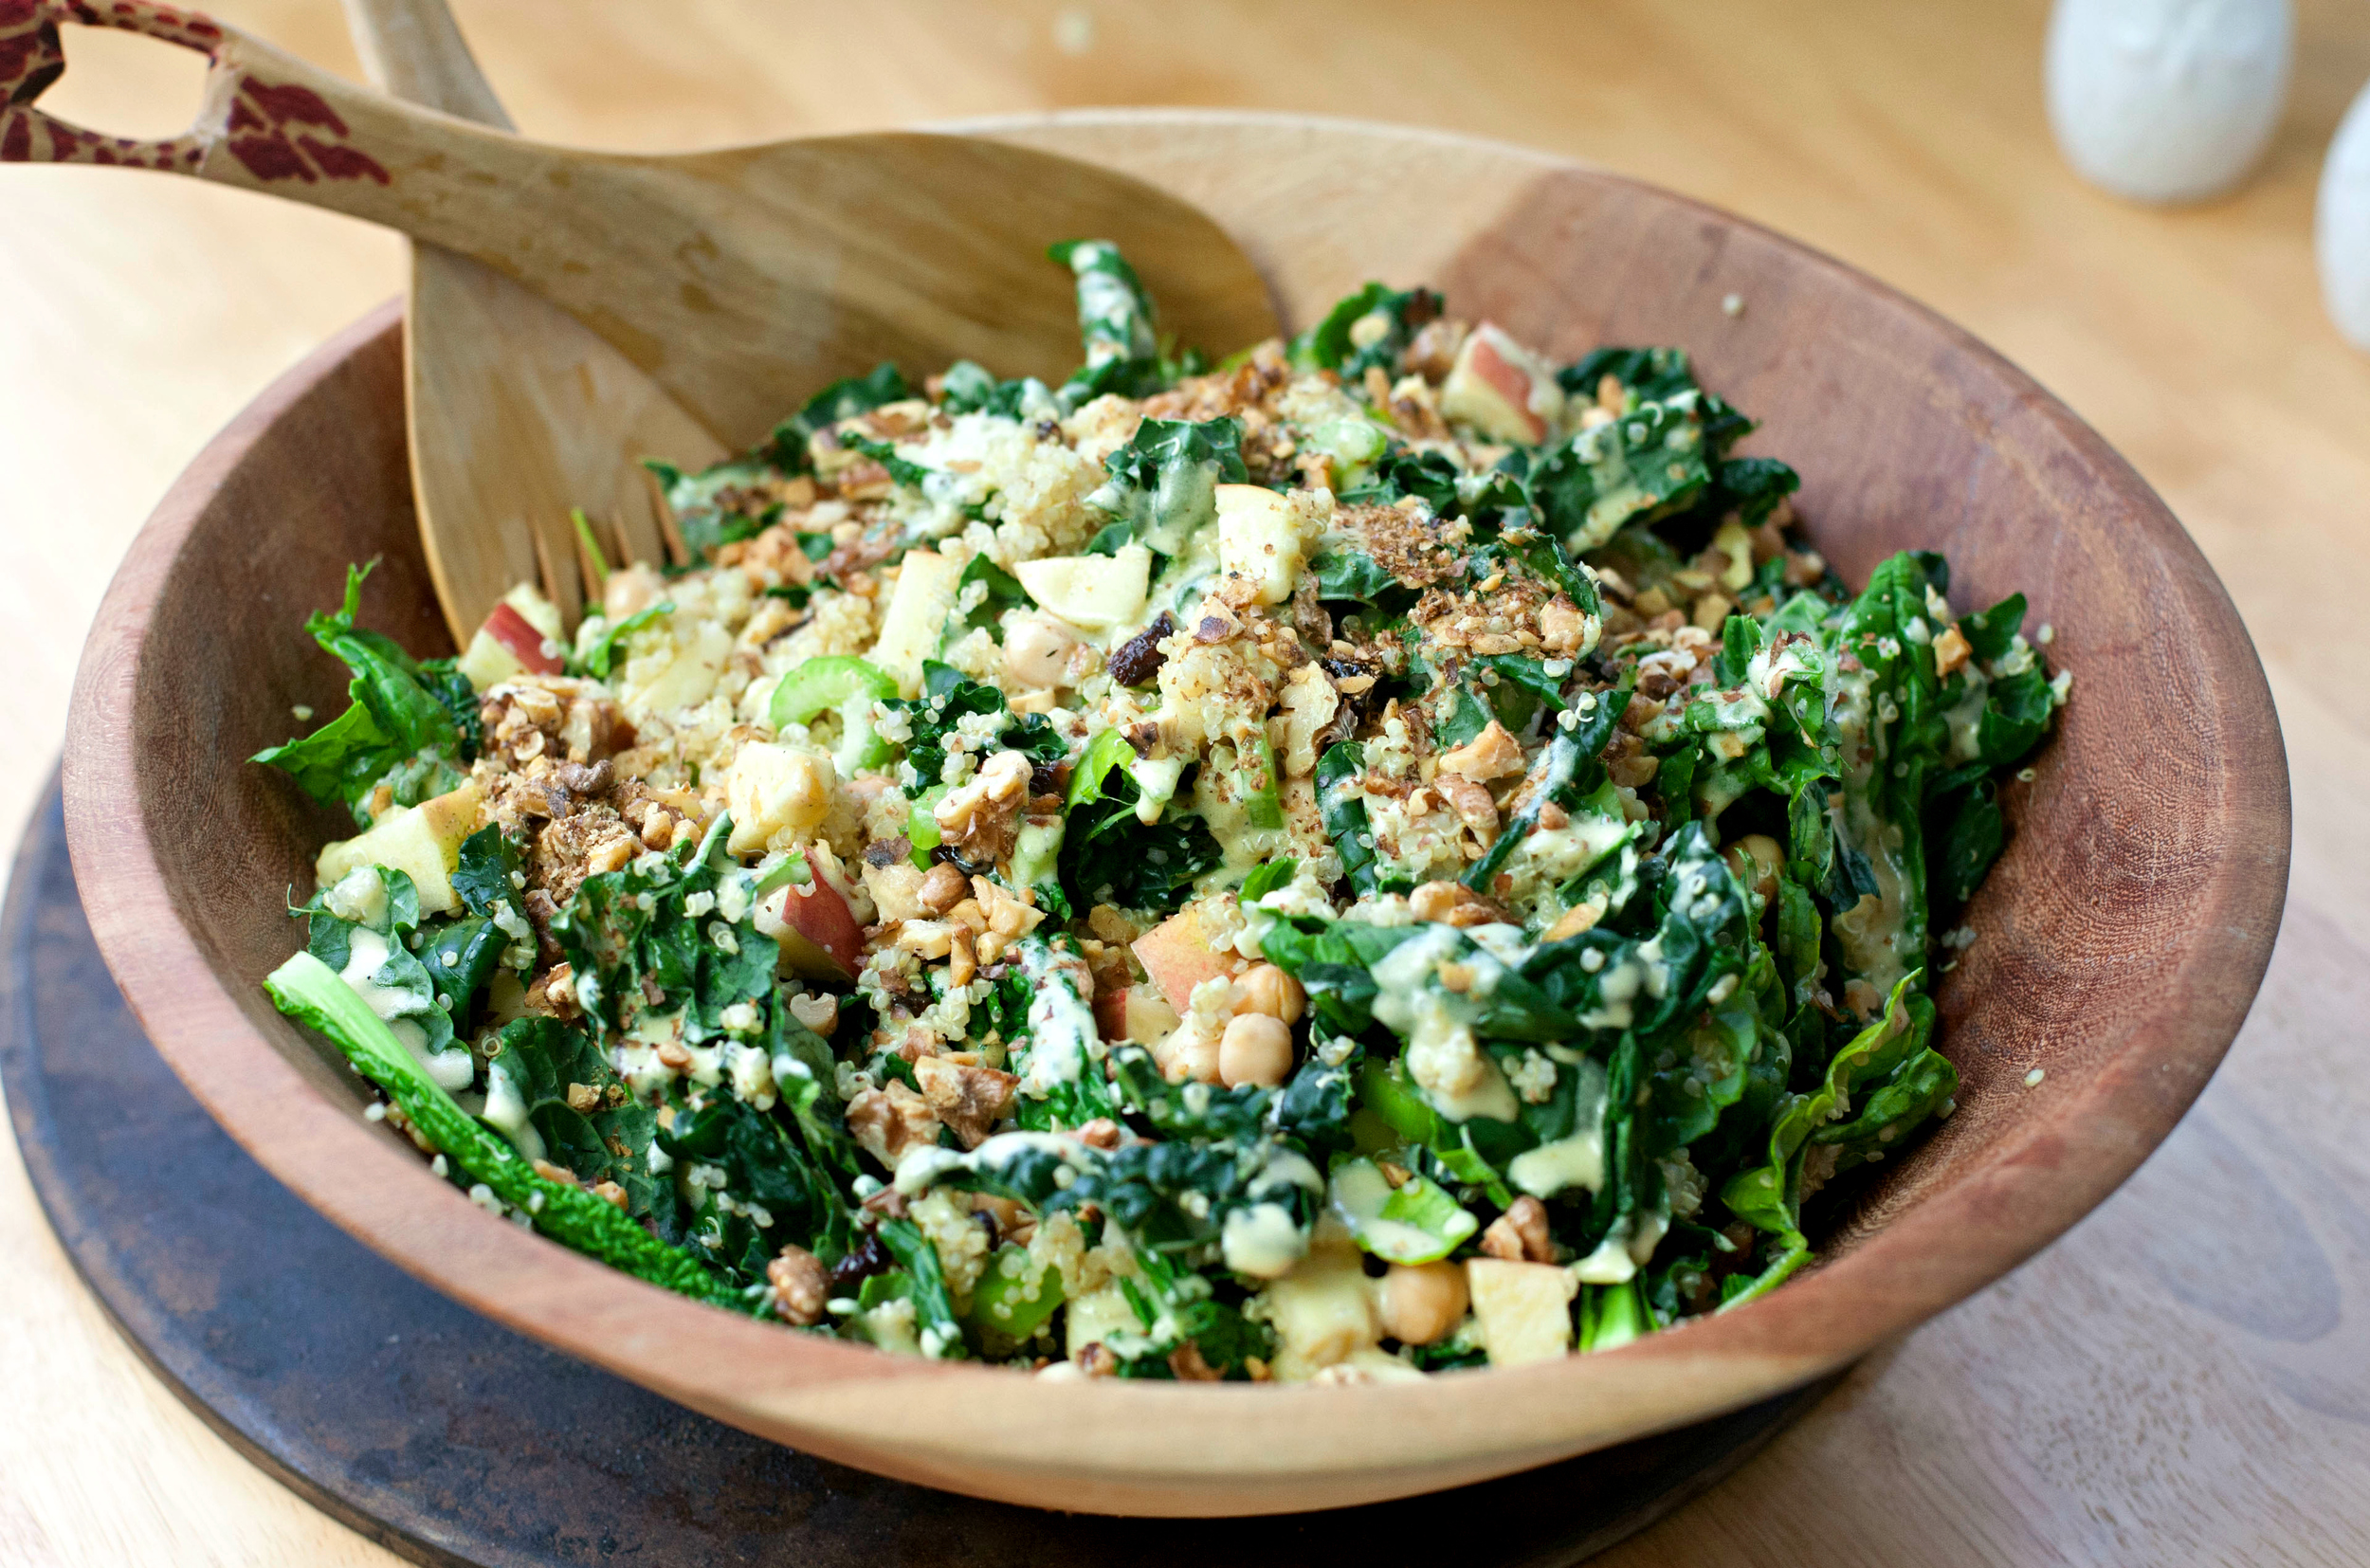 Homemade Healthy Kale Recipes | Homemade Recipes //homemaderecipes.com/healthy/11-kale-recipes/